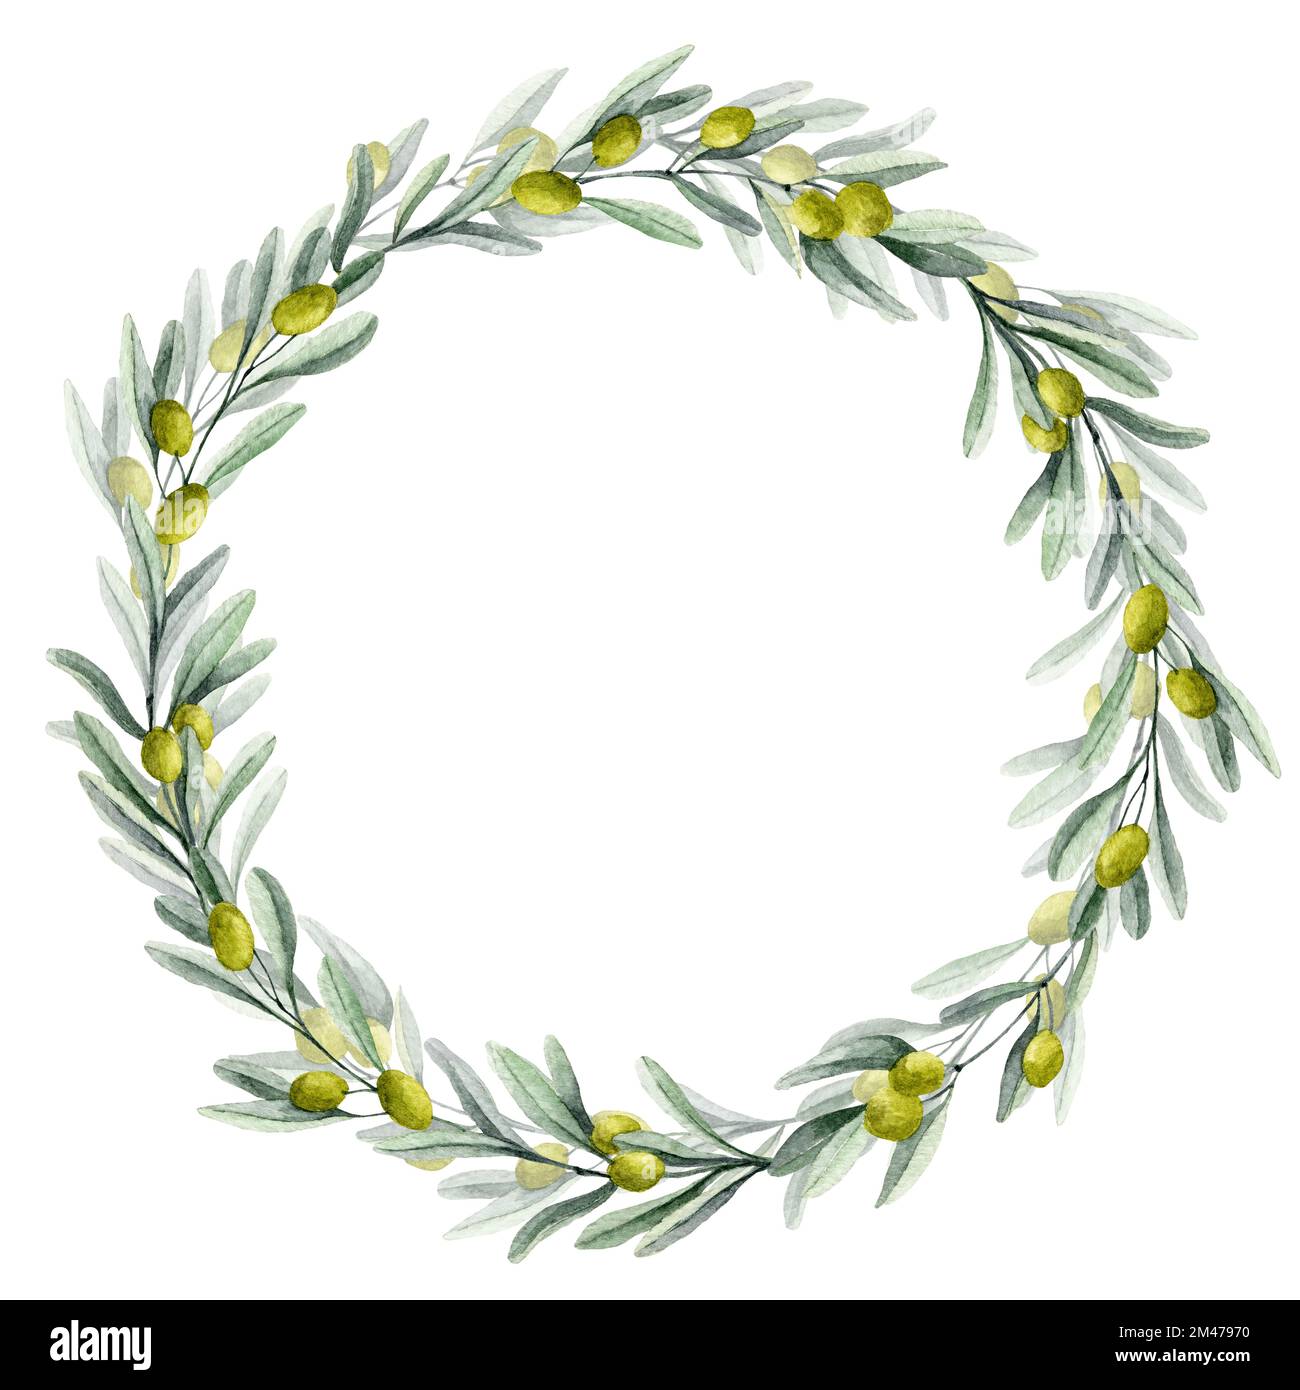 Aquarell Olive Rundkranz mit grünen Blättern und Früchten. Kreisrahmen für Hochzeitseinladungen oder Grußkarten. Handgezeichnete Blumenzeichnung auf isoliertem Hintergrund. Botanische Lorbeerzeichnung. Stockfoto